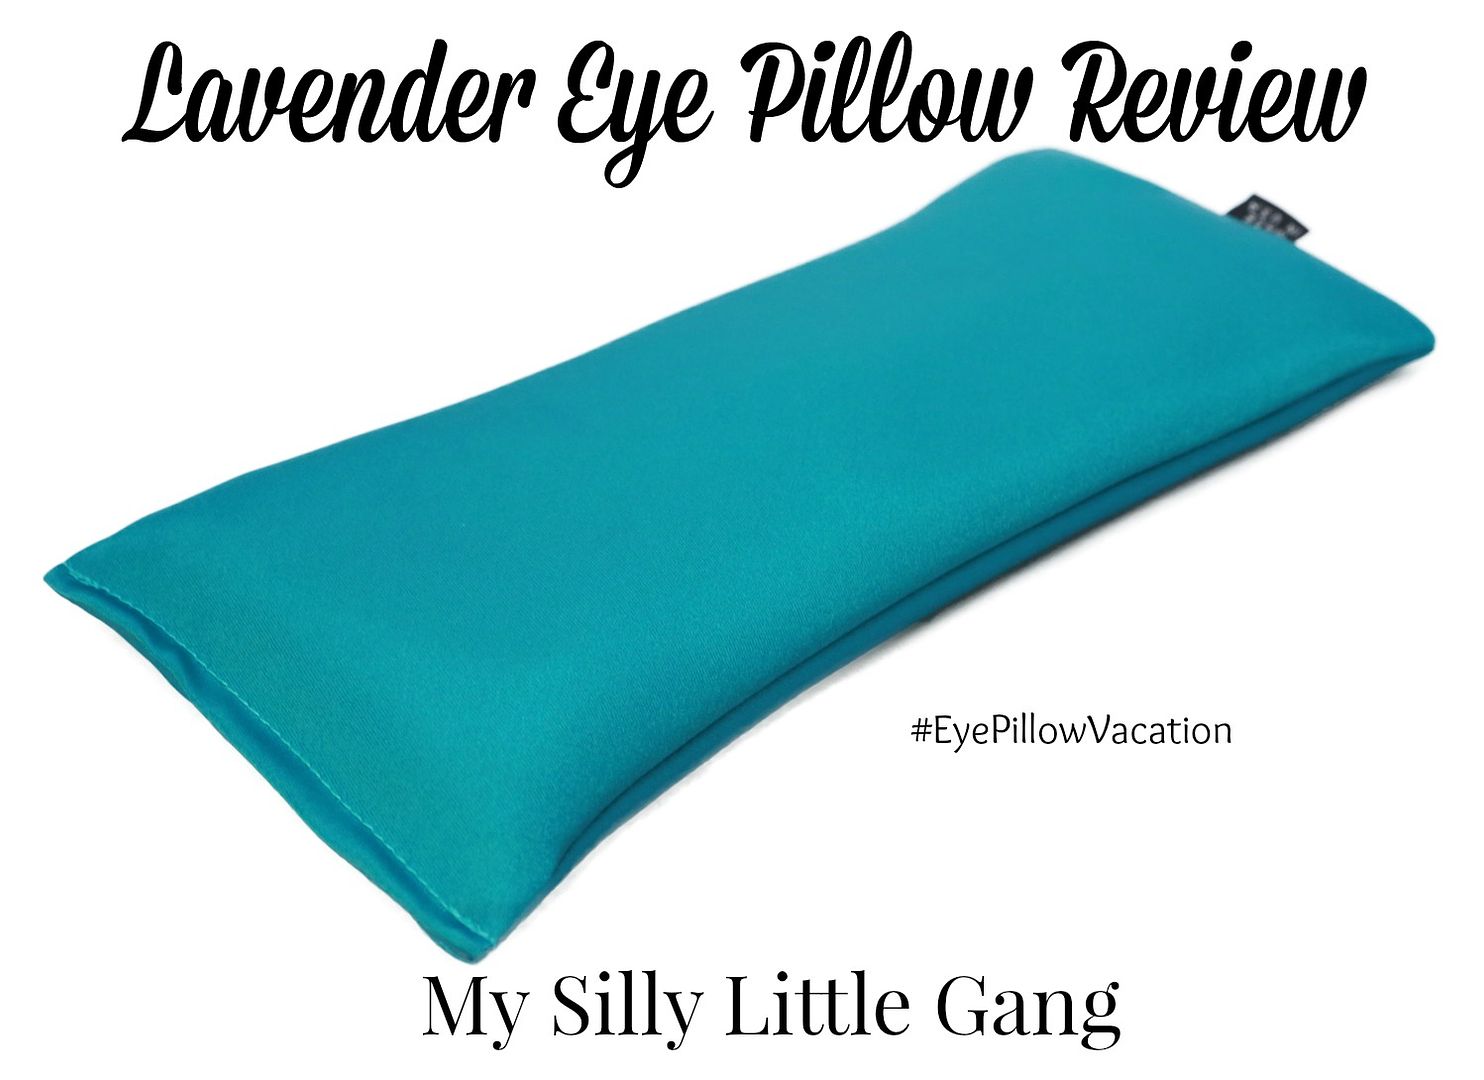 lavender-eye-pillow